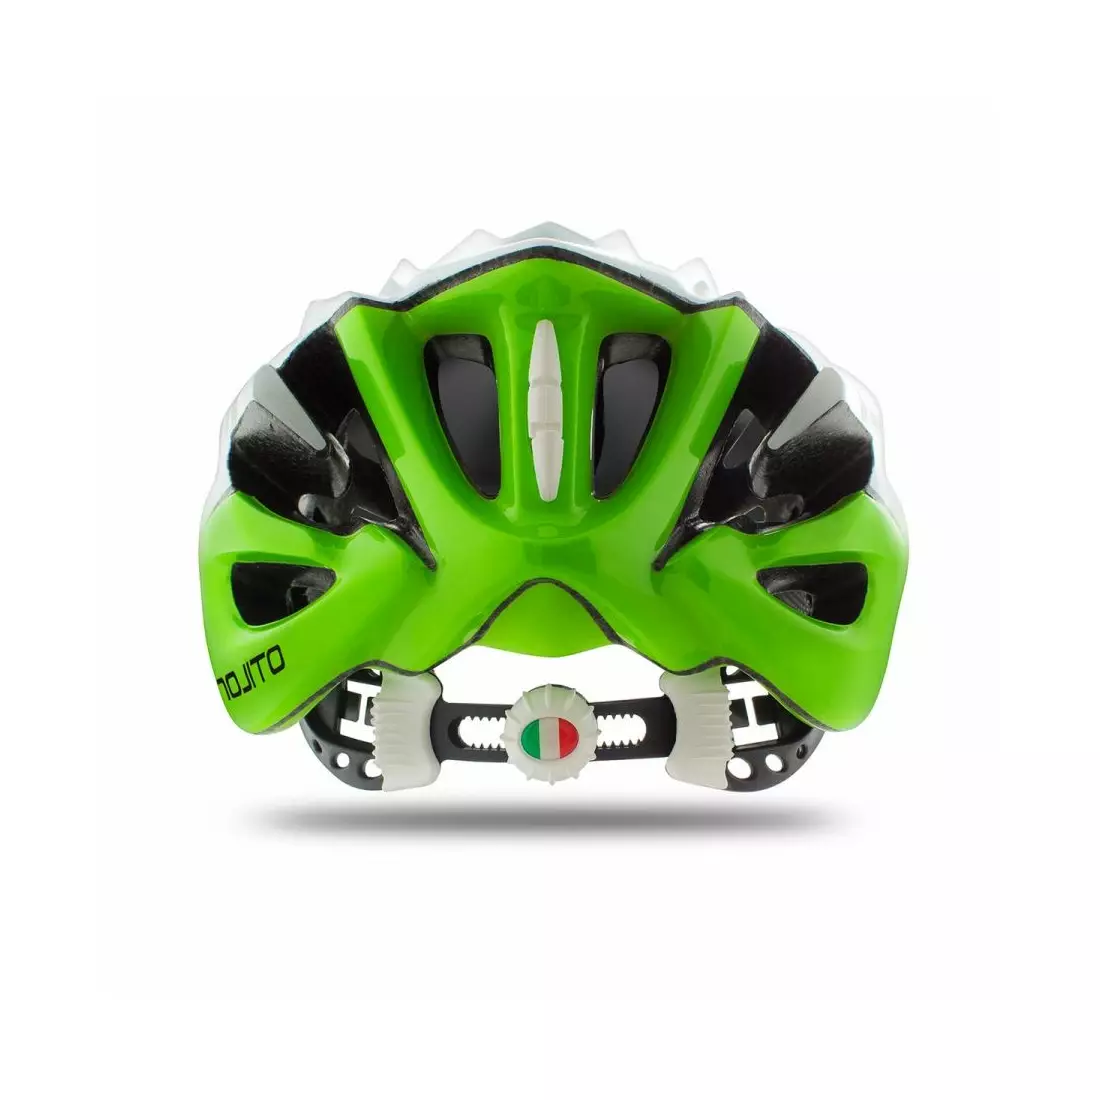 PŘILBA MOJITO - cyklistická přilba CHE00026.208 barva: bílo-zelená